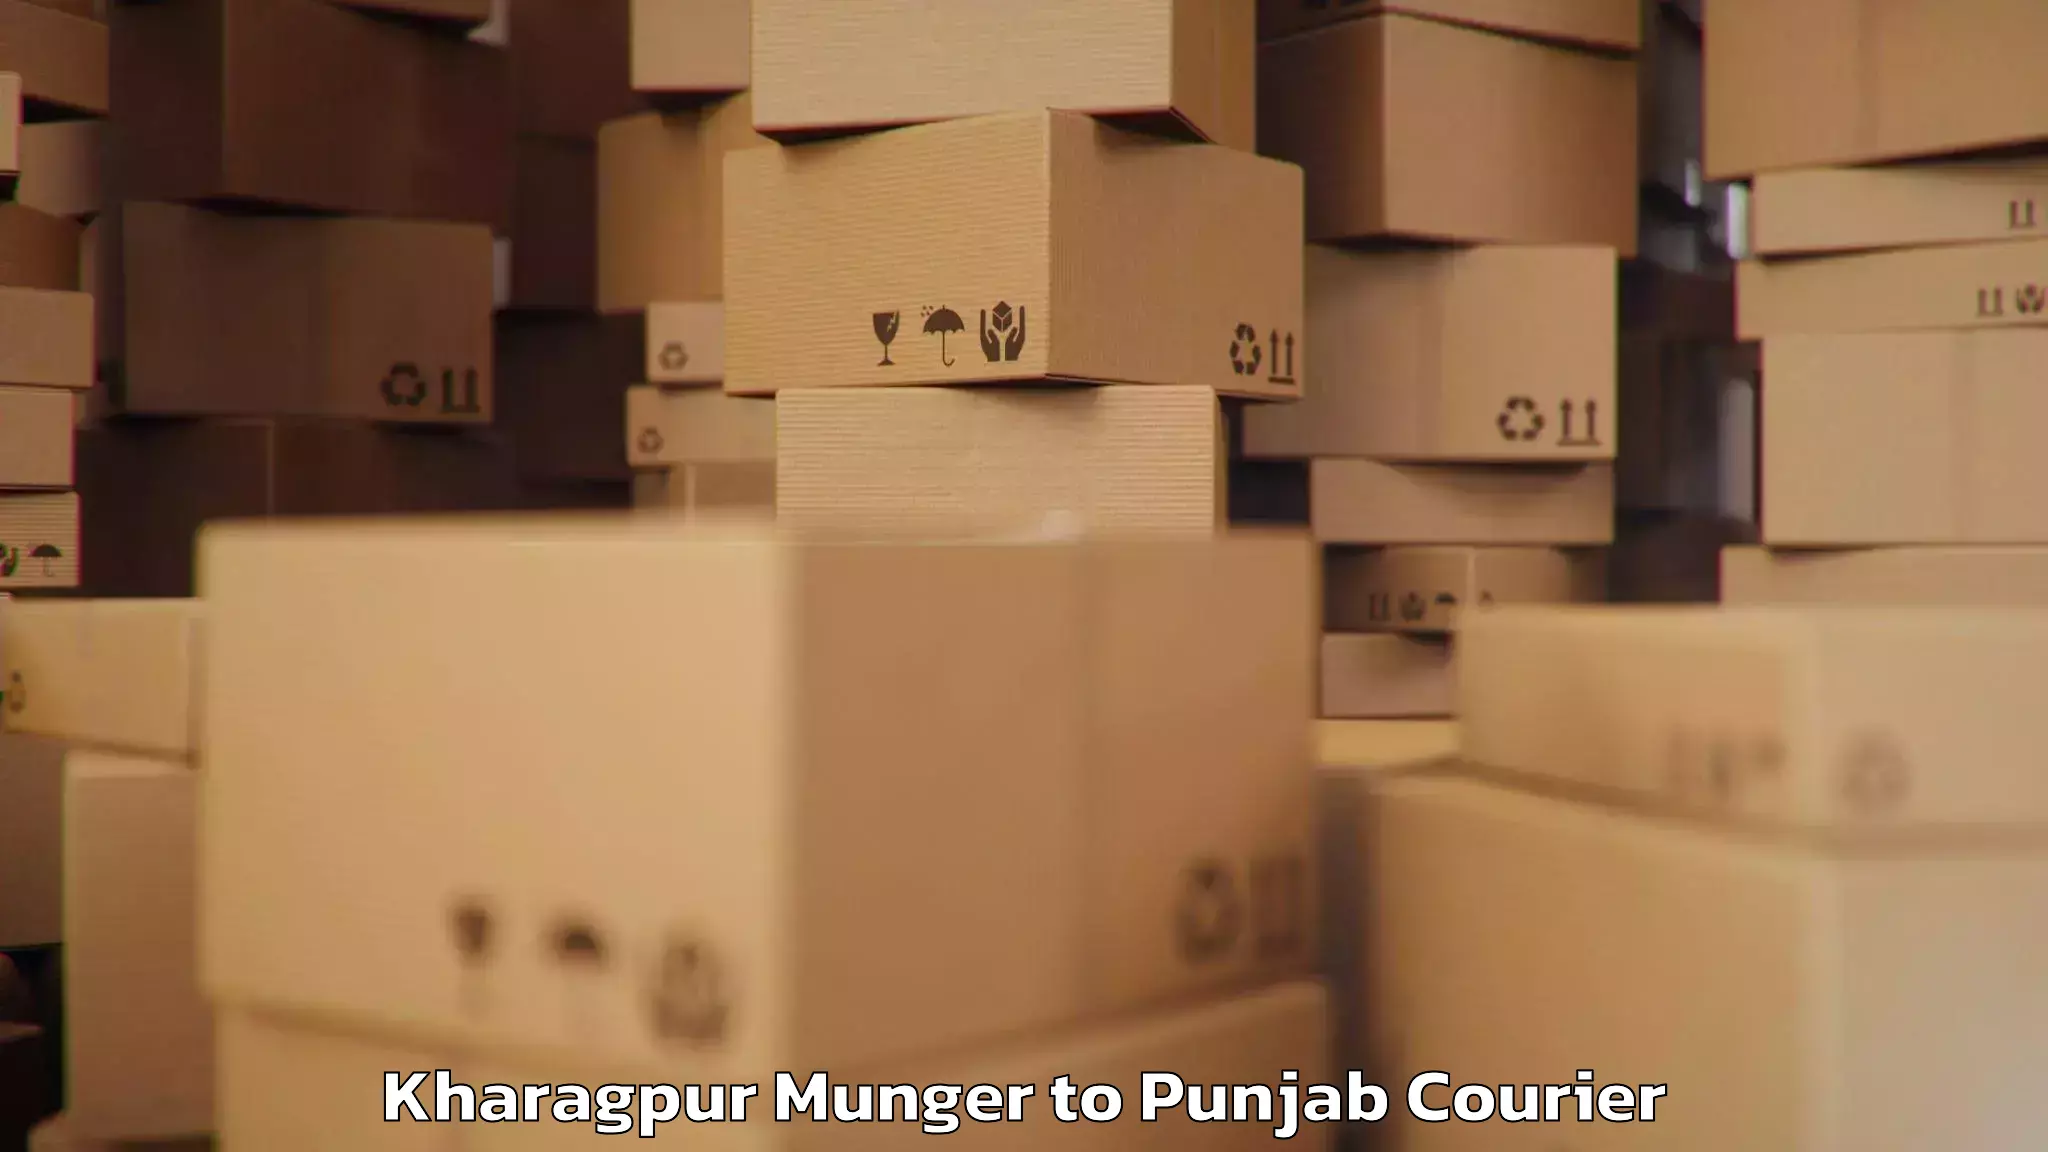 Baggage transport updates Kharagpur Munger to Raikot